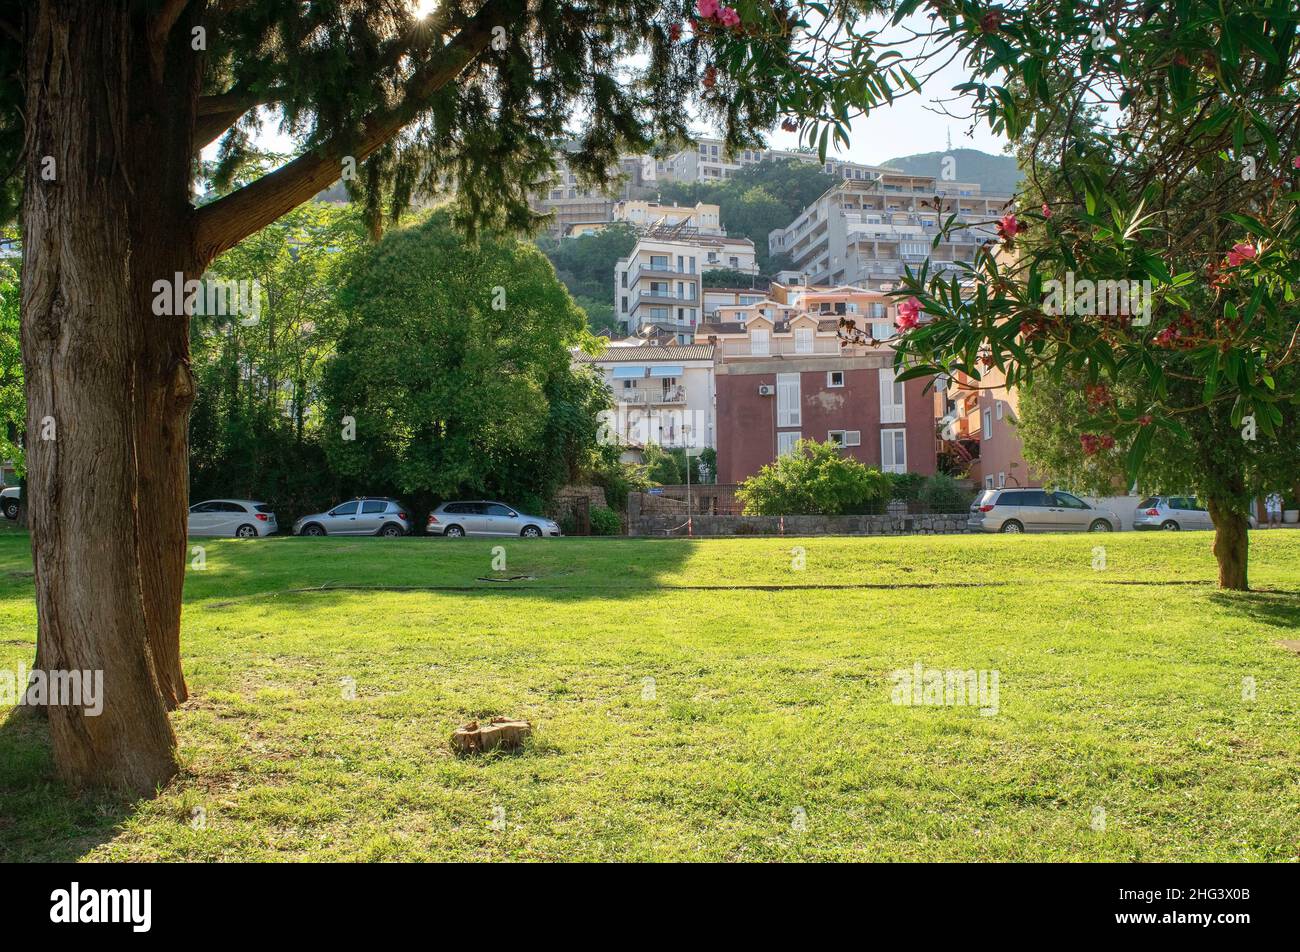 Monténégro - Budva: 6 septembre 2021: Parc public de la ville de Budva avec des bâtiments résidentiels sur la colline.Ville touristique avec de beaux jardins verdoyants Banque D'Images